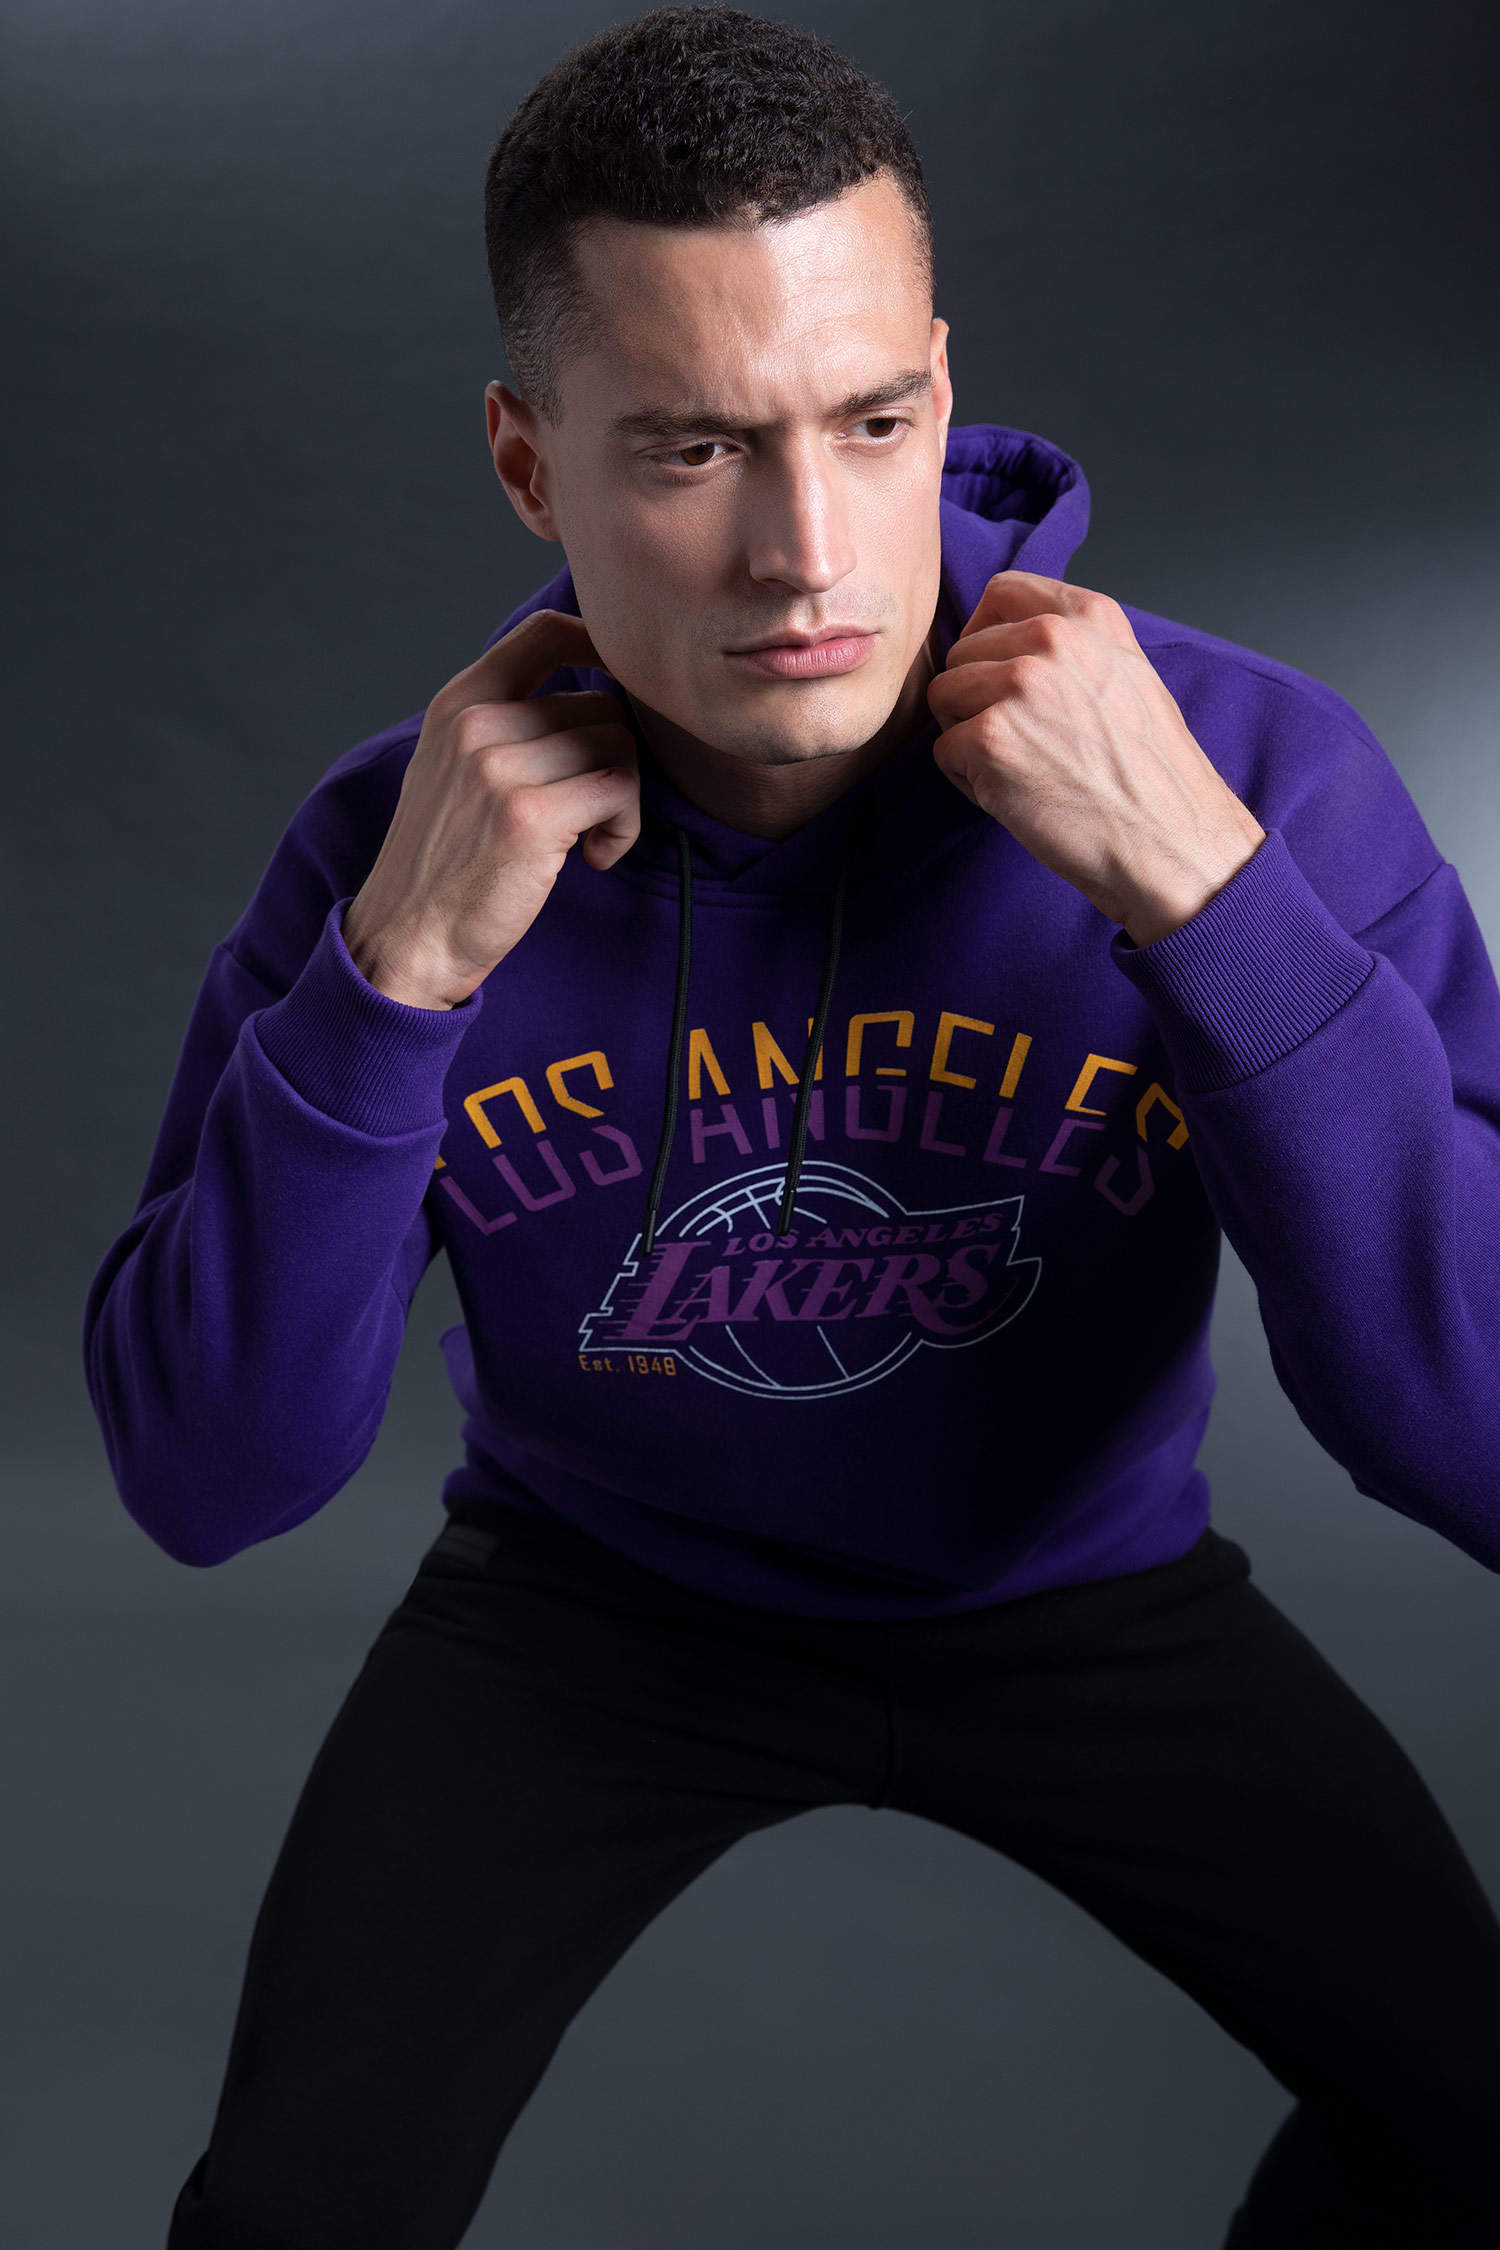 NBA Los Angeles Lakers Licensed Sweatshirt